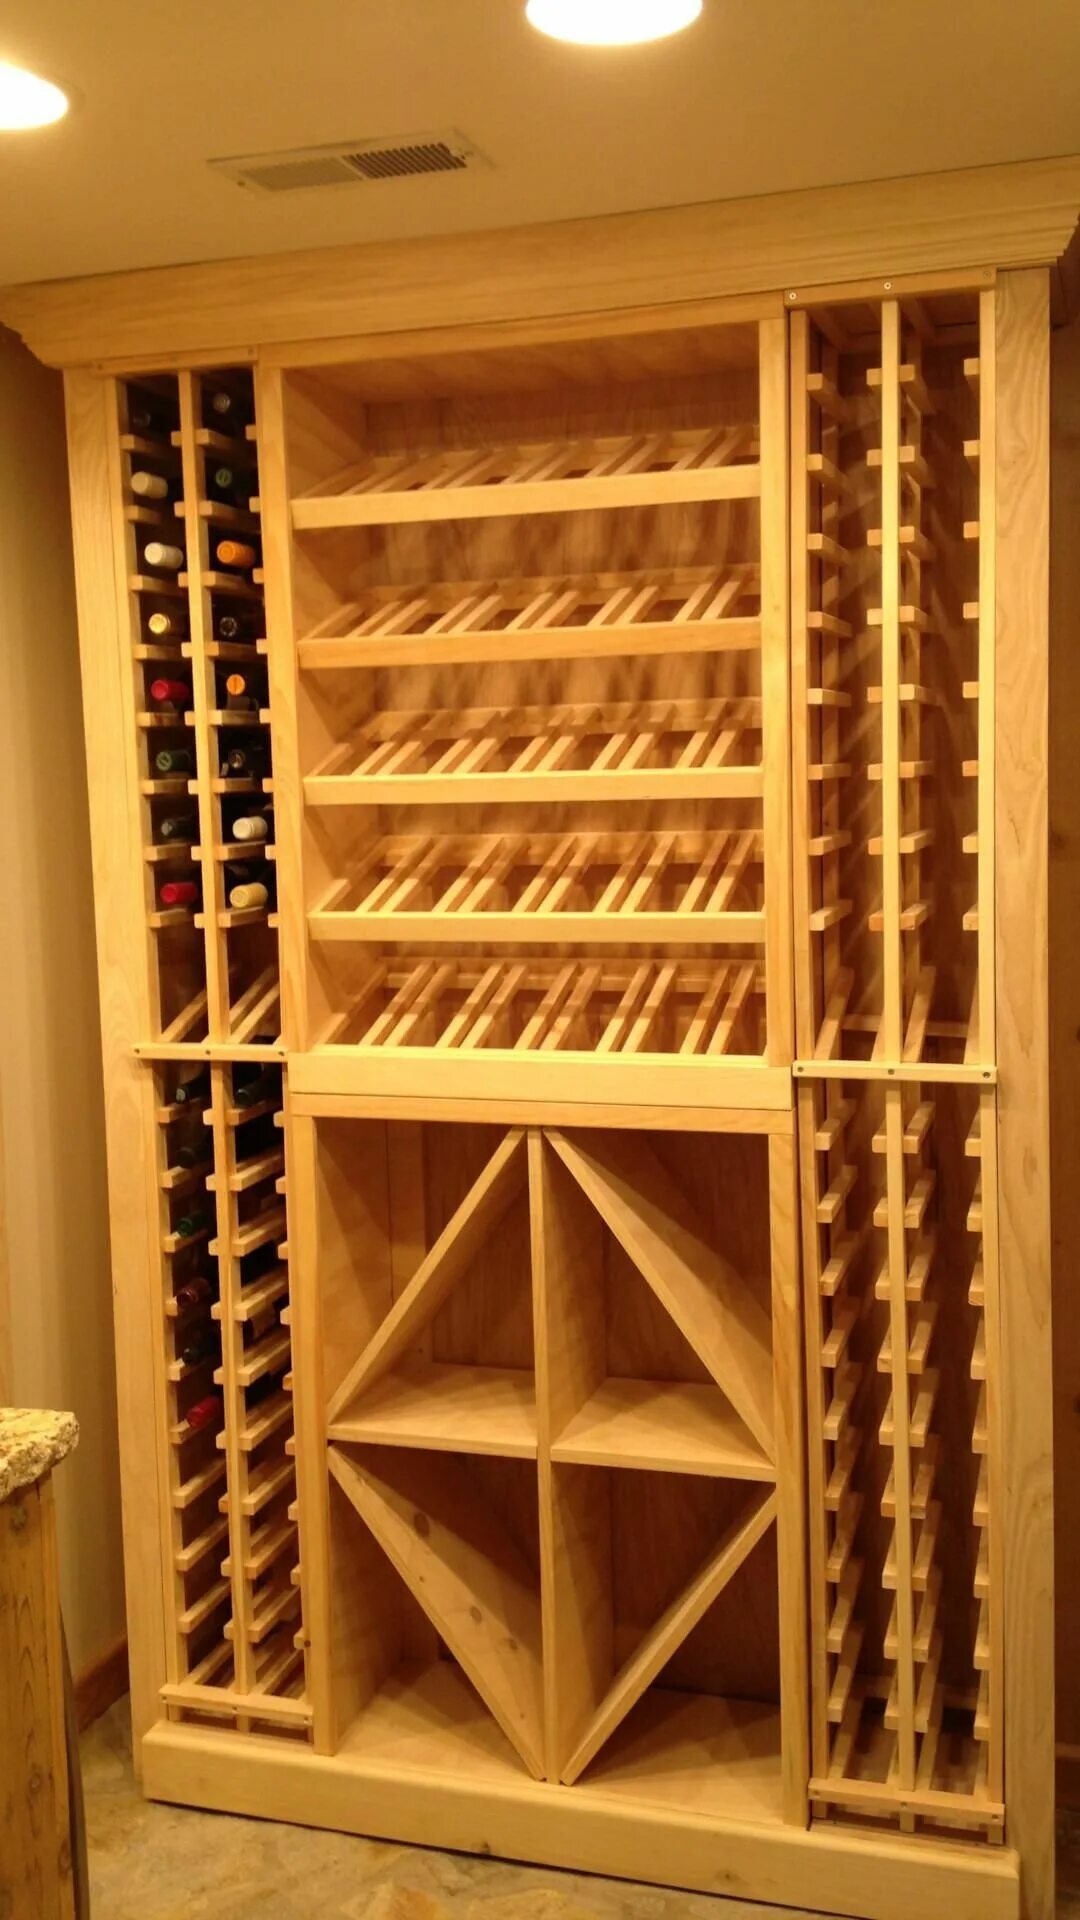 Wine Storage model 430 винный шкаф. Стеллажи для винного погреба. Винные стеллажи в подвале. Стеллаж для вина в погреб.